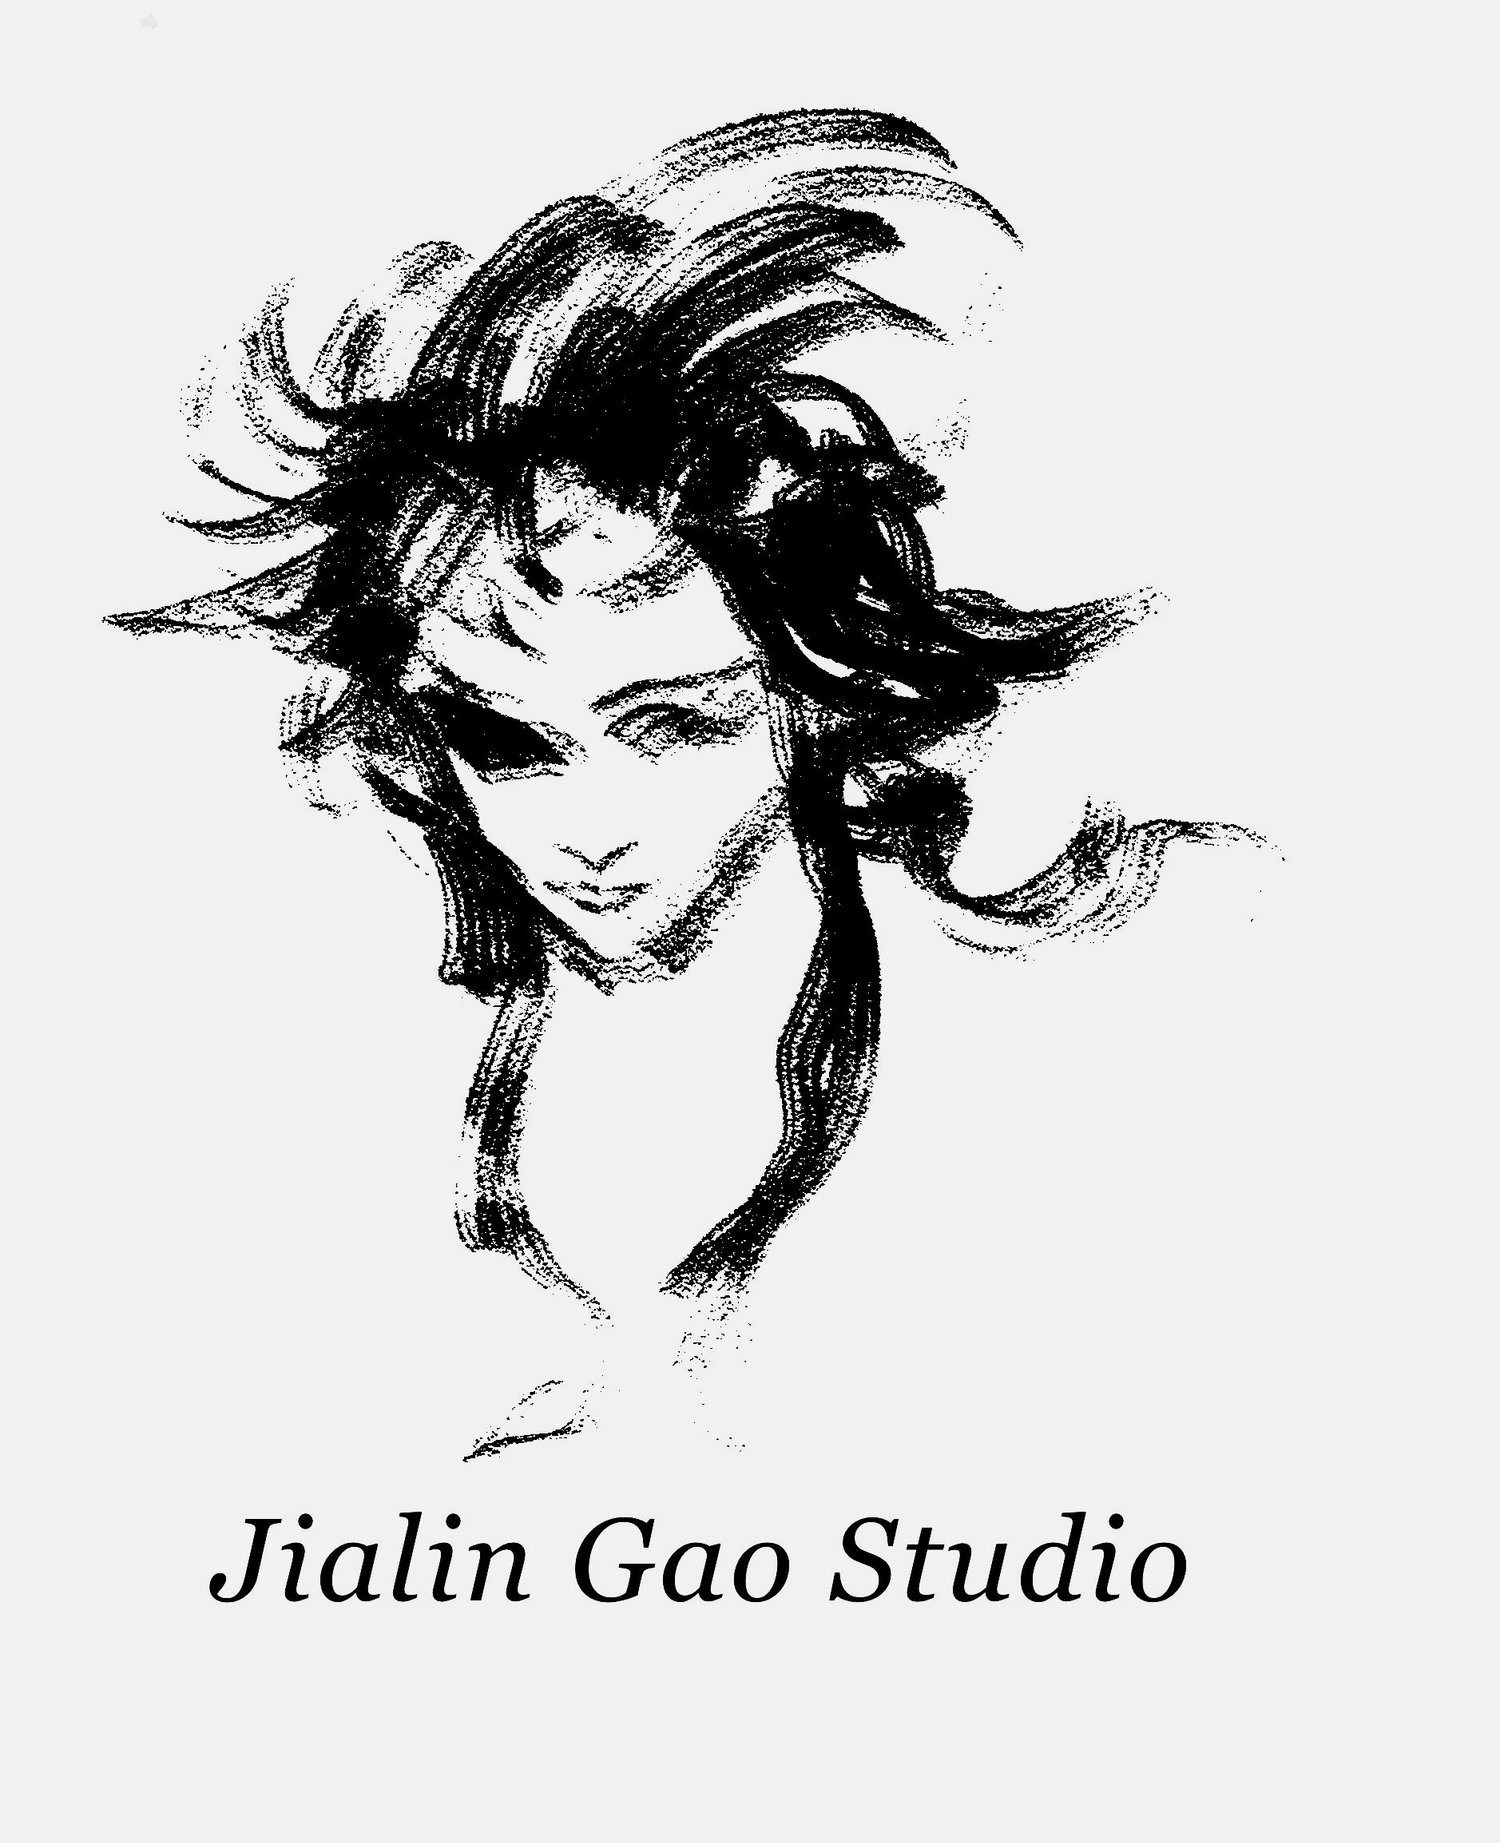 Jialin Gao Studio